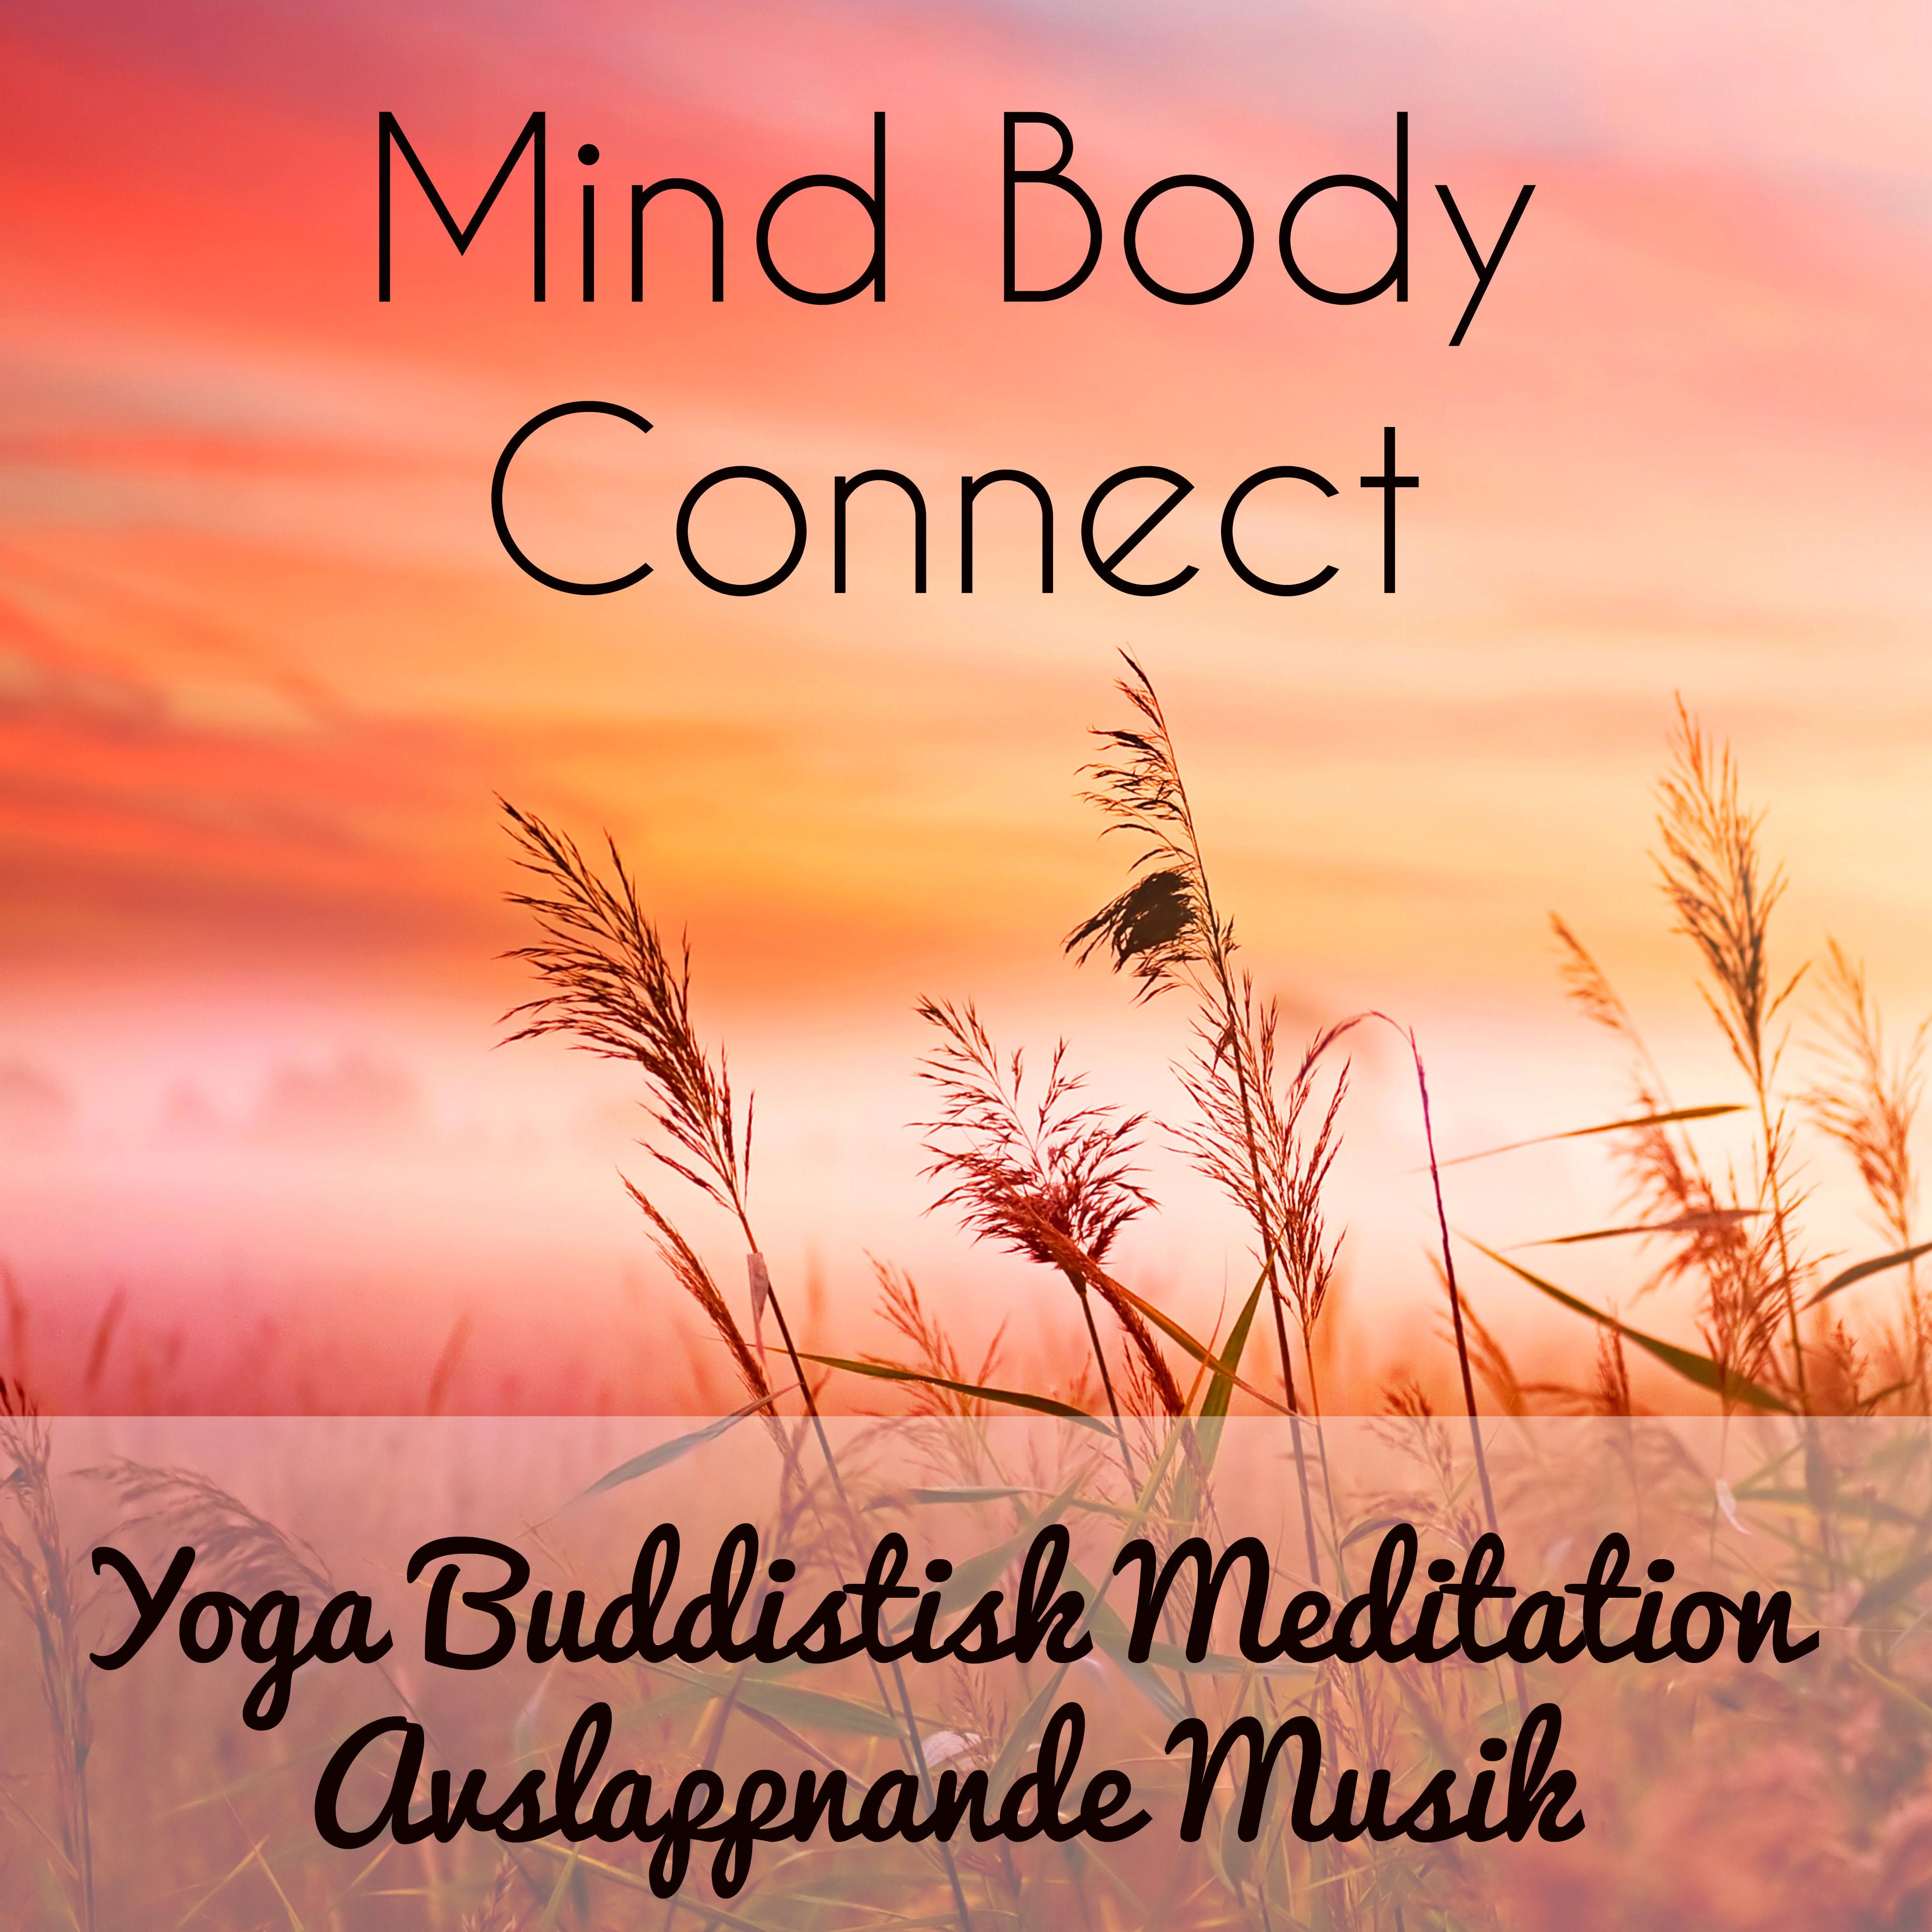 Mind Body Connect - Yoga Buddistisk Meditation Avslappnande Musik för Chakra Alignment Ljudterapi Klardrömmar